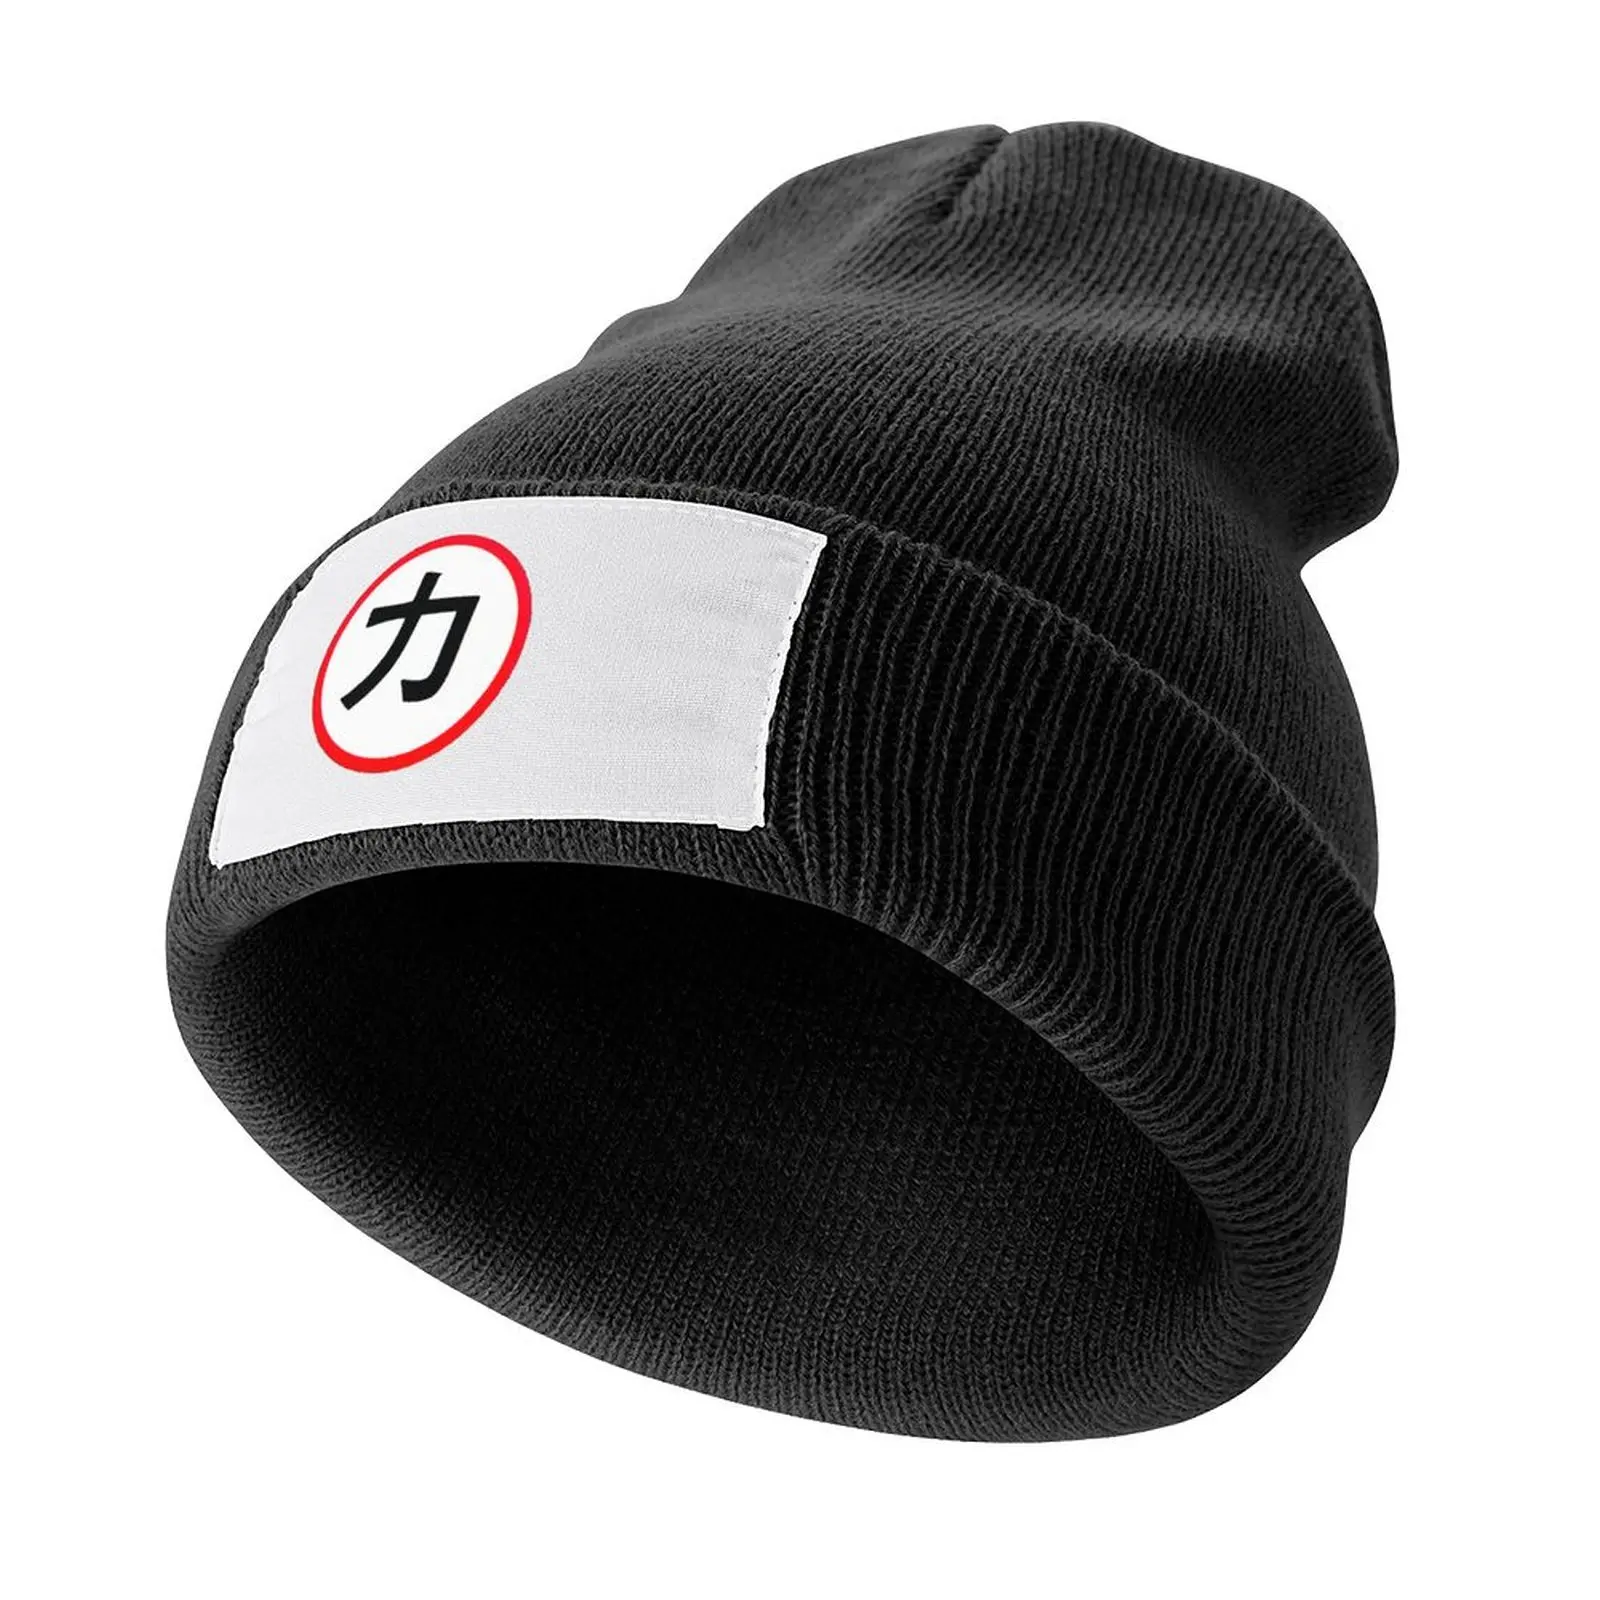 

Chikara Power Symbol Knitted Cap Thermal Visor Ball Cap Military Tactical Cap Hats For Women Men's